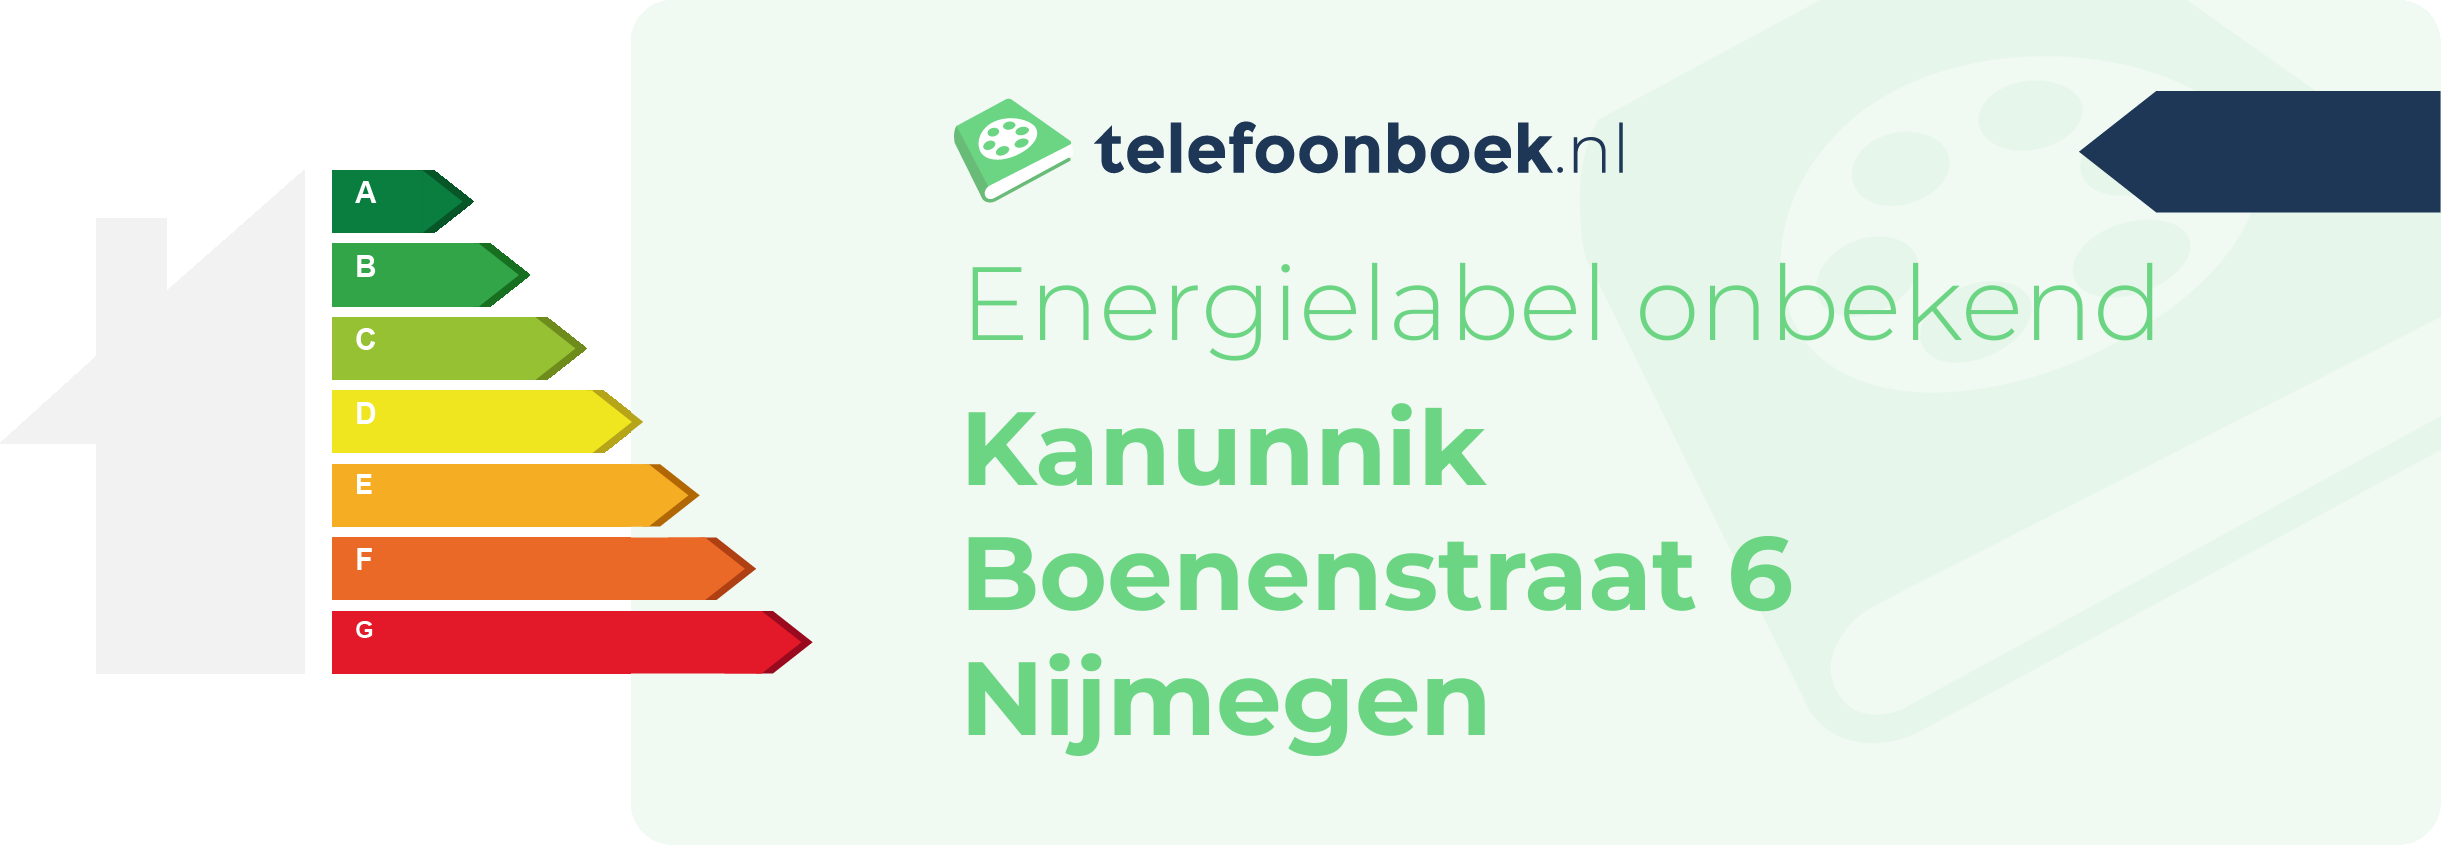 Energielabel Kanunnik Boenenstraat 6 Nijmegen